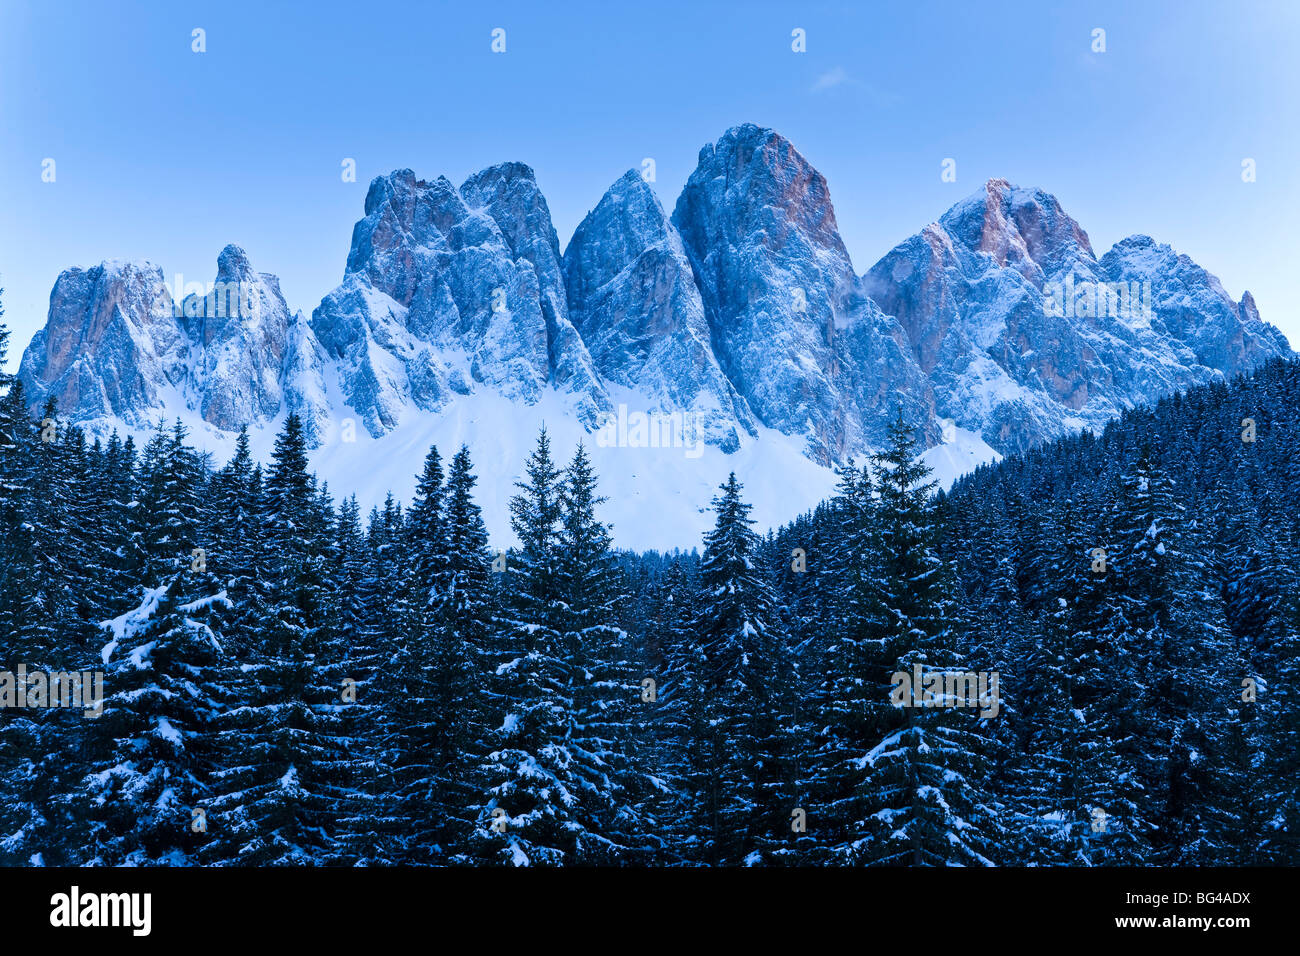 Le Odle Group, Geisler Spitzen (3060m), Val di Funes, Italian Dolomites mountains, Trentino-Alto Adige, South Tirol, Italy Stock Photo